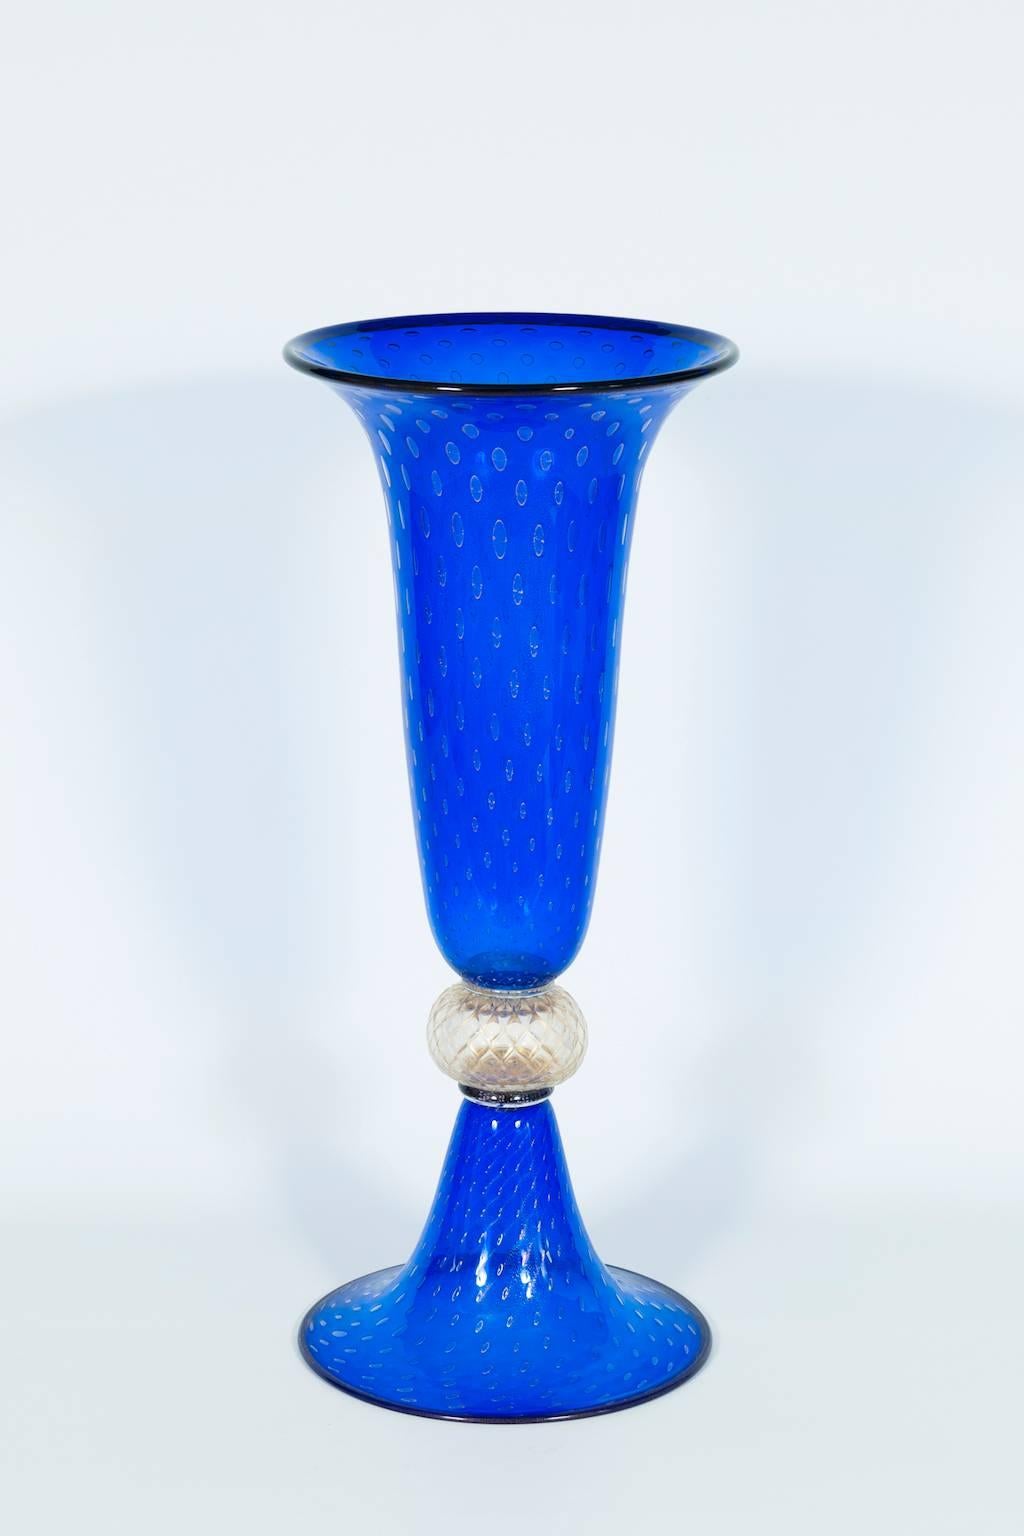 Vase géant en verre de Murano couleur bleue et finitions dorées Italie années 1950.
Superbe vase italien en verre vénitien de Murano bleu et or, composé d'une base et d'une coupe en couleur bleue avec des bulles dorées immergées et au centre une